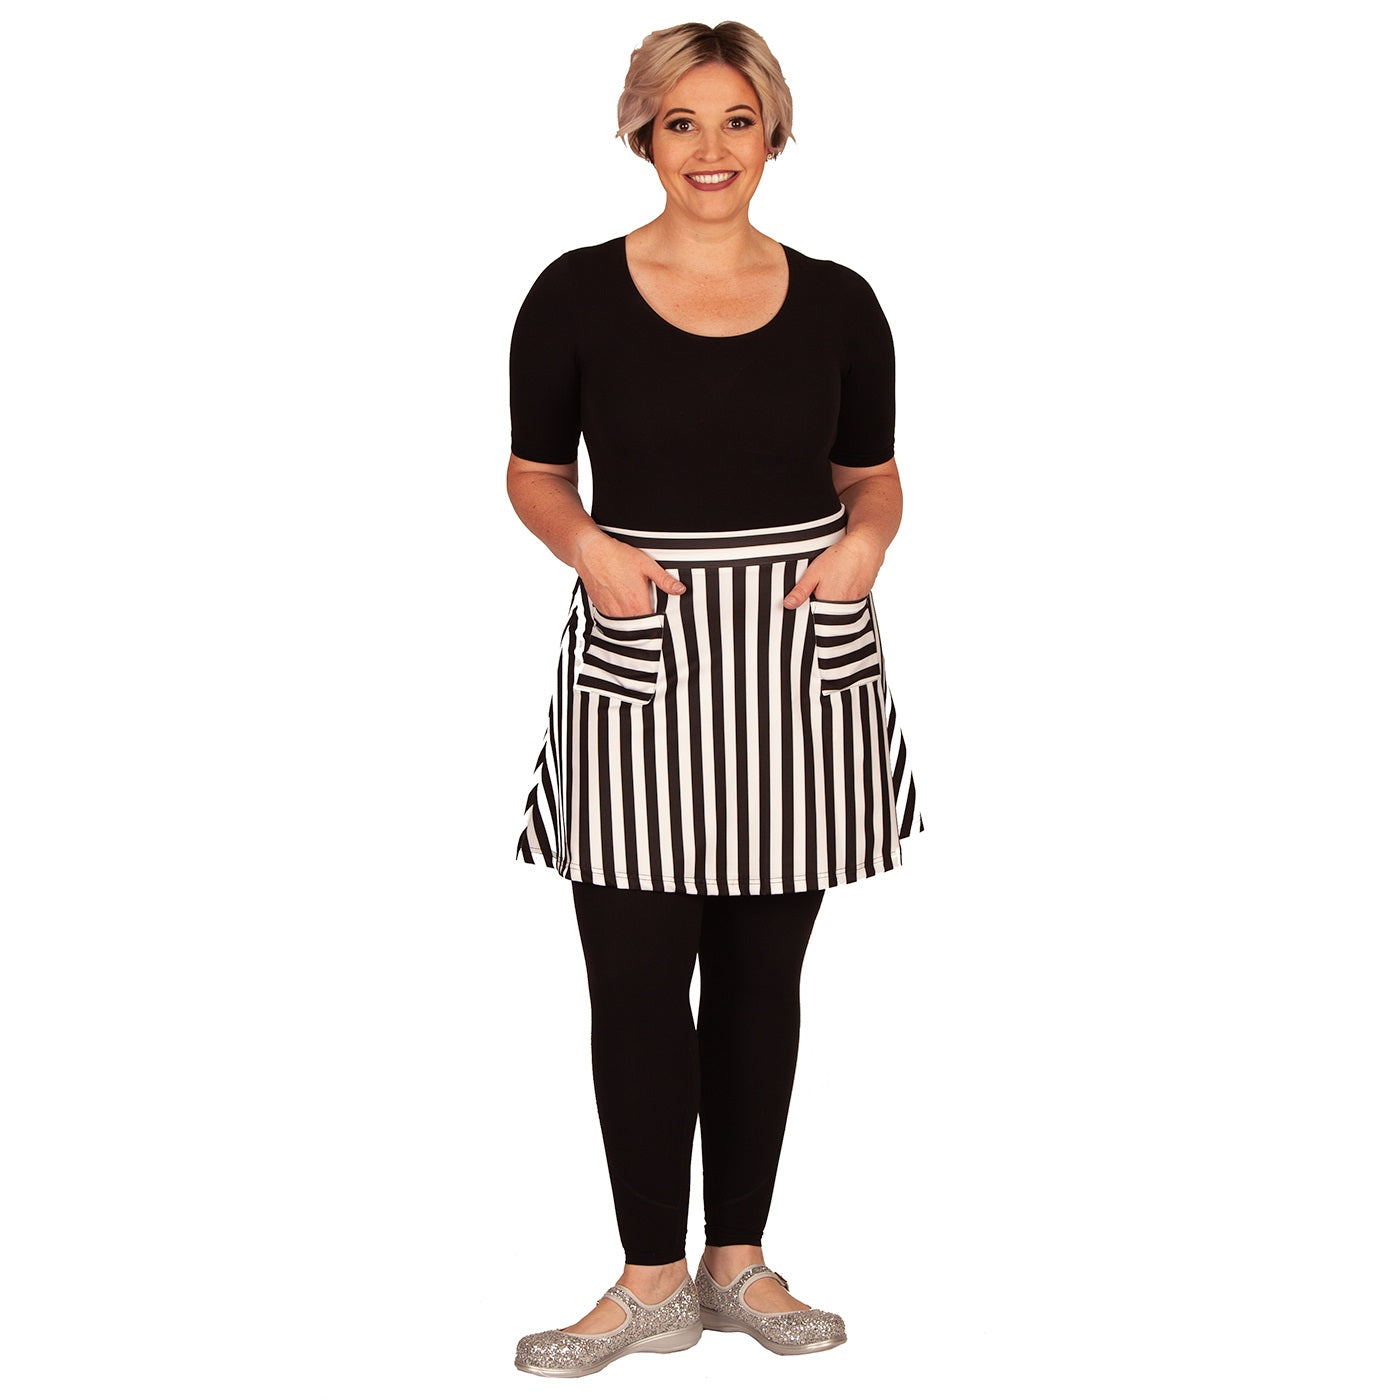 Zebra Short Skirt by RainbowsAndFairies.com (Black & White - Stripes - Monochrome - Skirt With Pockets - Aline Skirt - Cute Flirty - Vintage Inspired) - SKU: CL_SHORT_ZEBRA_ORG - Pic 05